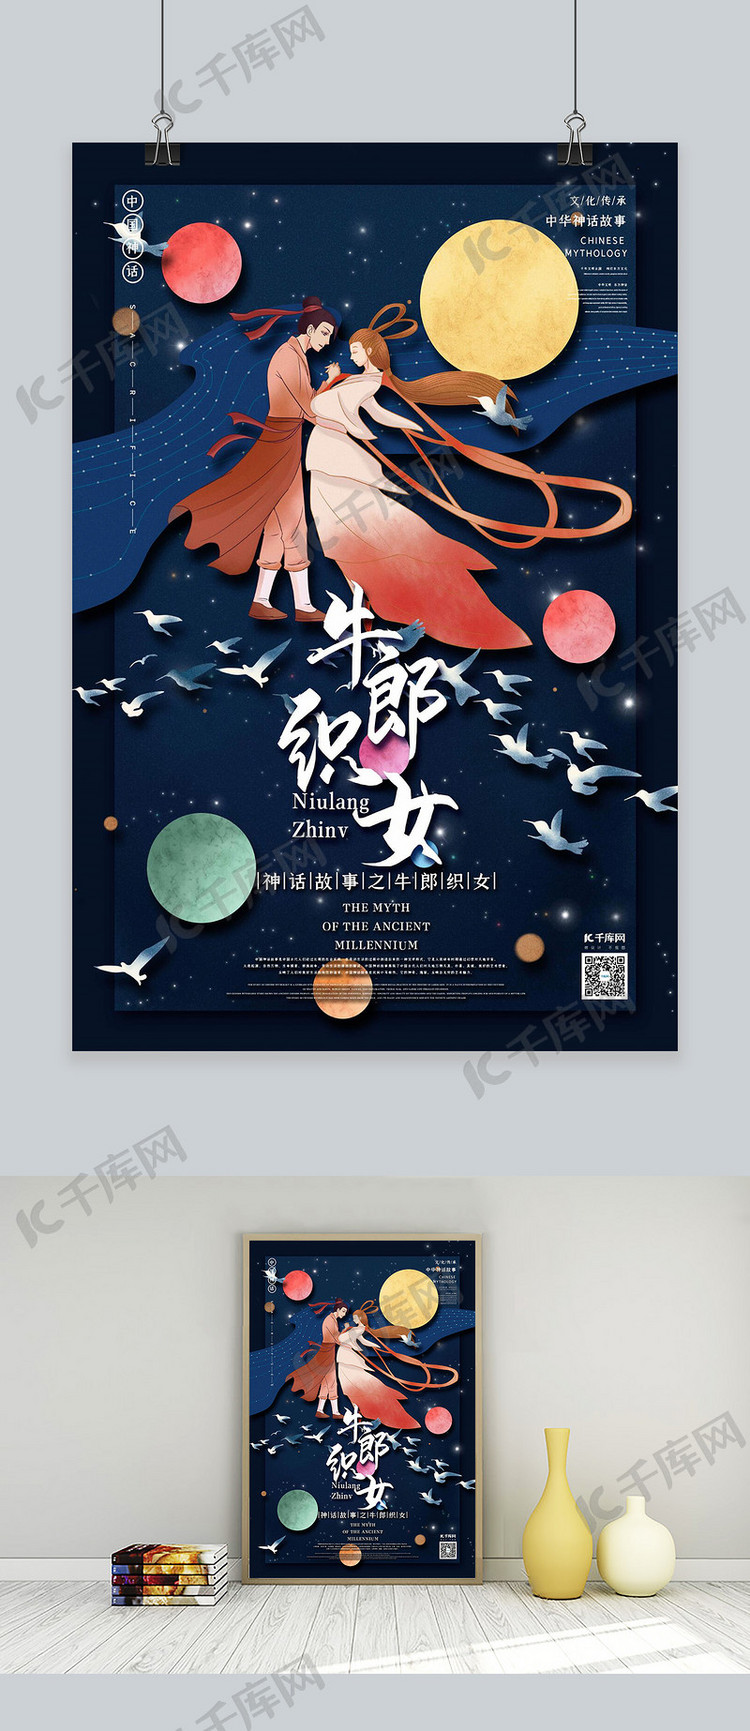 中国古代神话故事人物之牛郎织女国潮风格插画海报